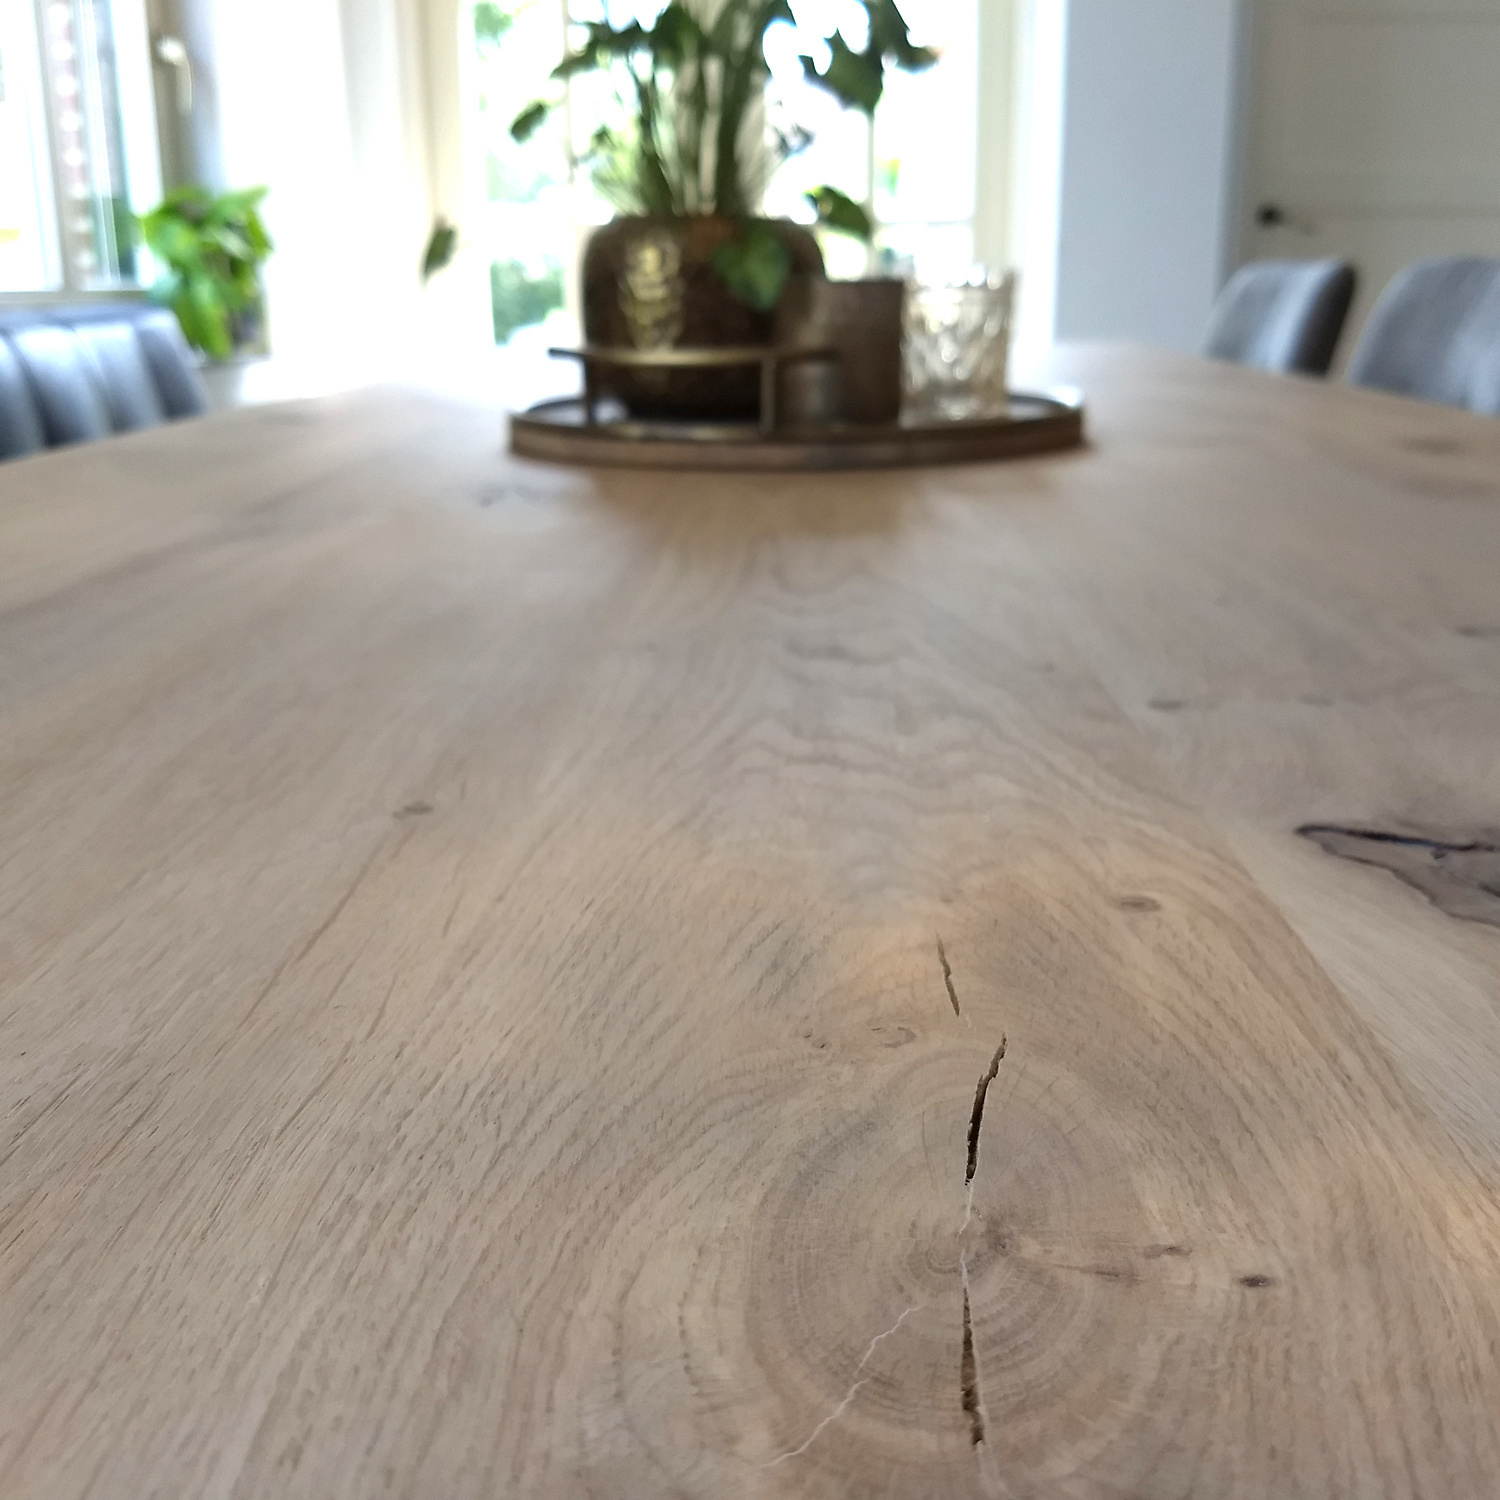  Tischplatte Eiche - Schweizer Kante - nach Maß - 4 cm dick (1-Schicht) - Breite Lamellen (10 - 12 cm breit) - Eichenholz rustikal - verleimt & künstlich getrocknet (HF 8-12%) - 50-120x50-248 cm